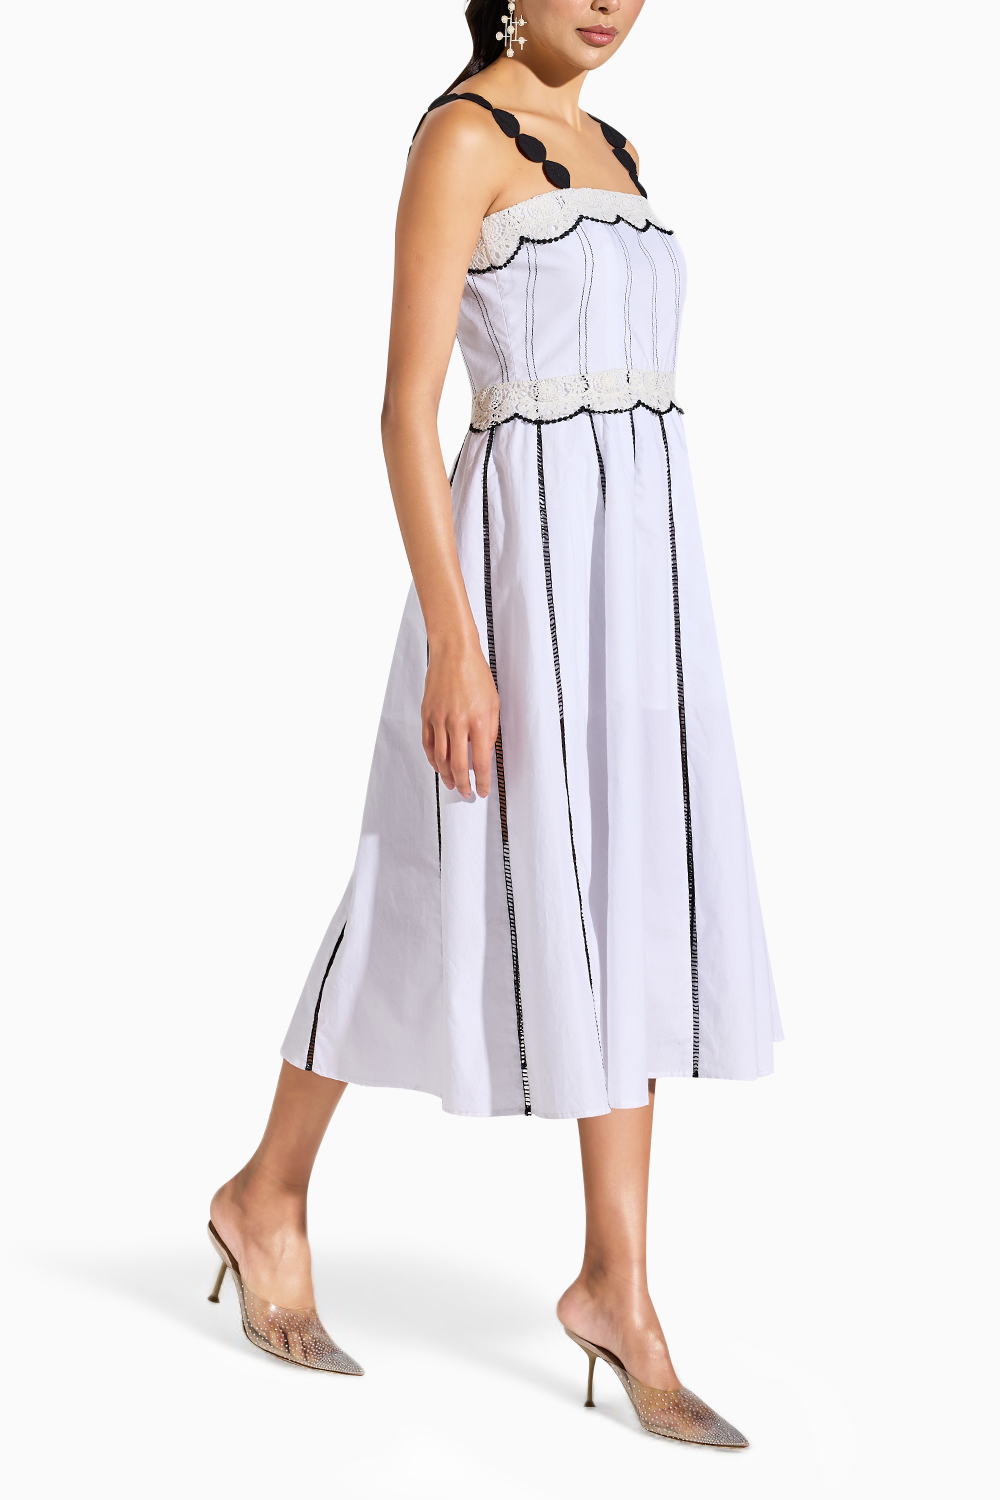 Monochrome Lace Dress